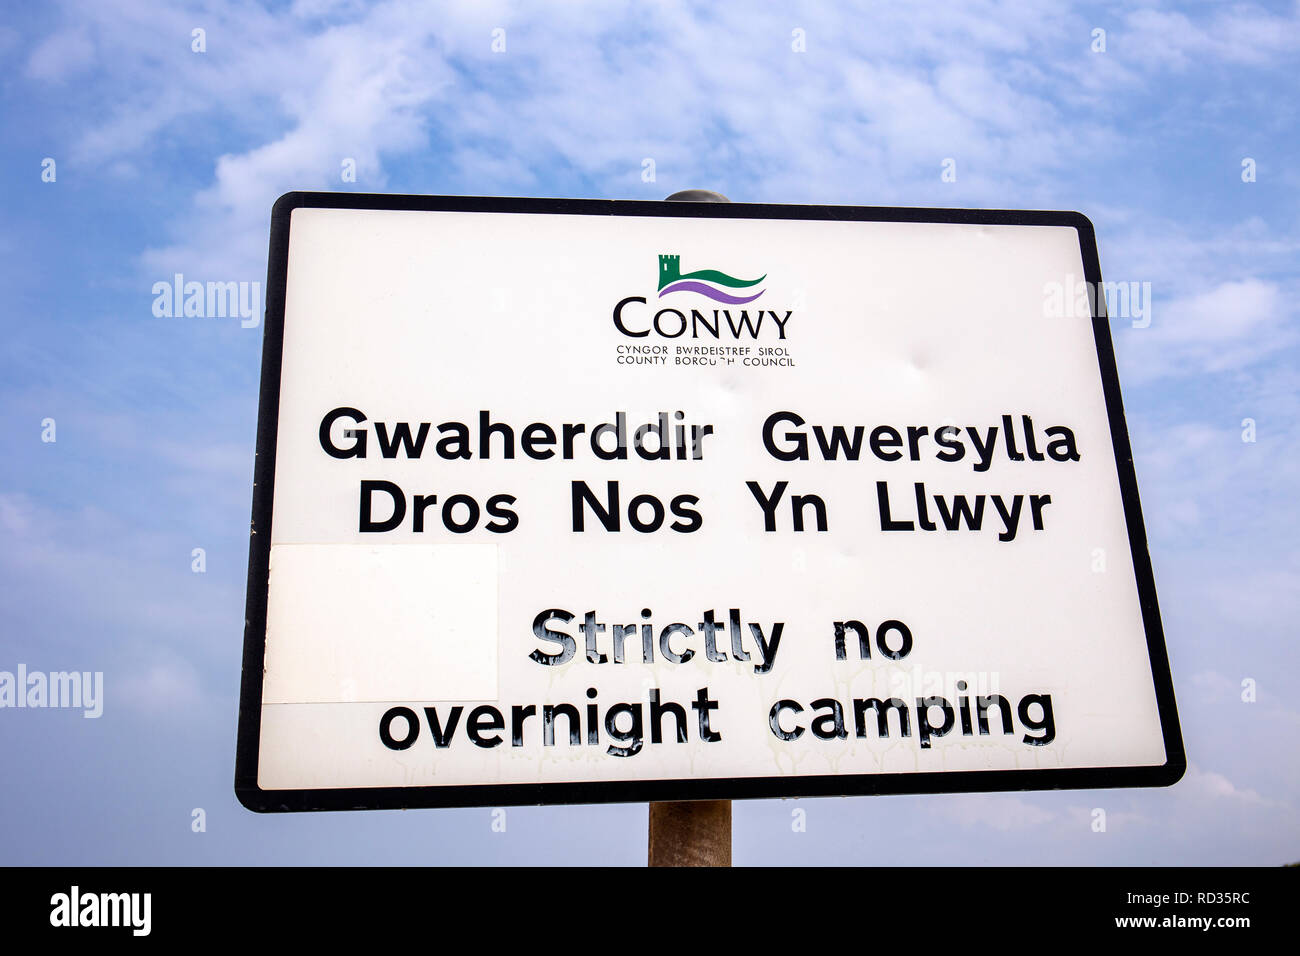 Streng keine Camping Übernachtung Anmelden Englisch und Wales Sprache wie von Conwy County Borough Council, Wales UK sagte Stockfoto